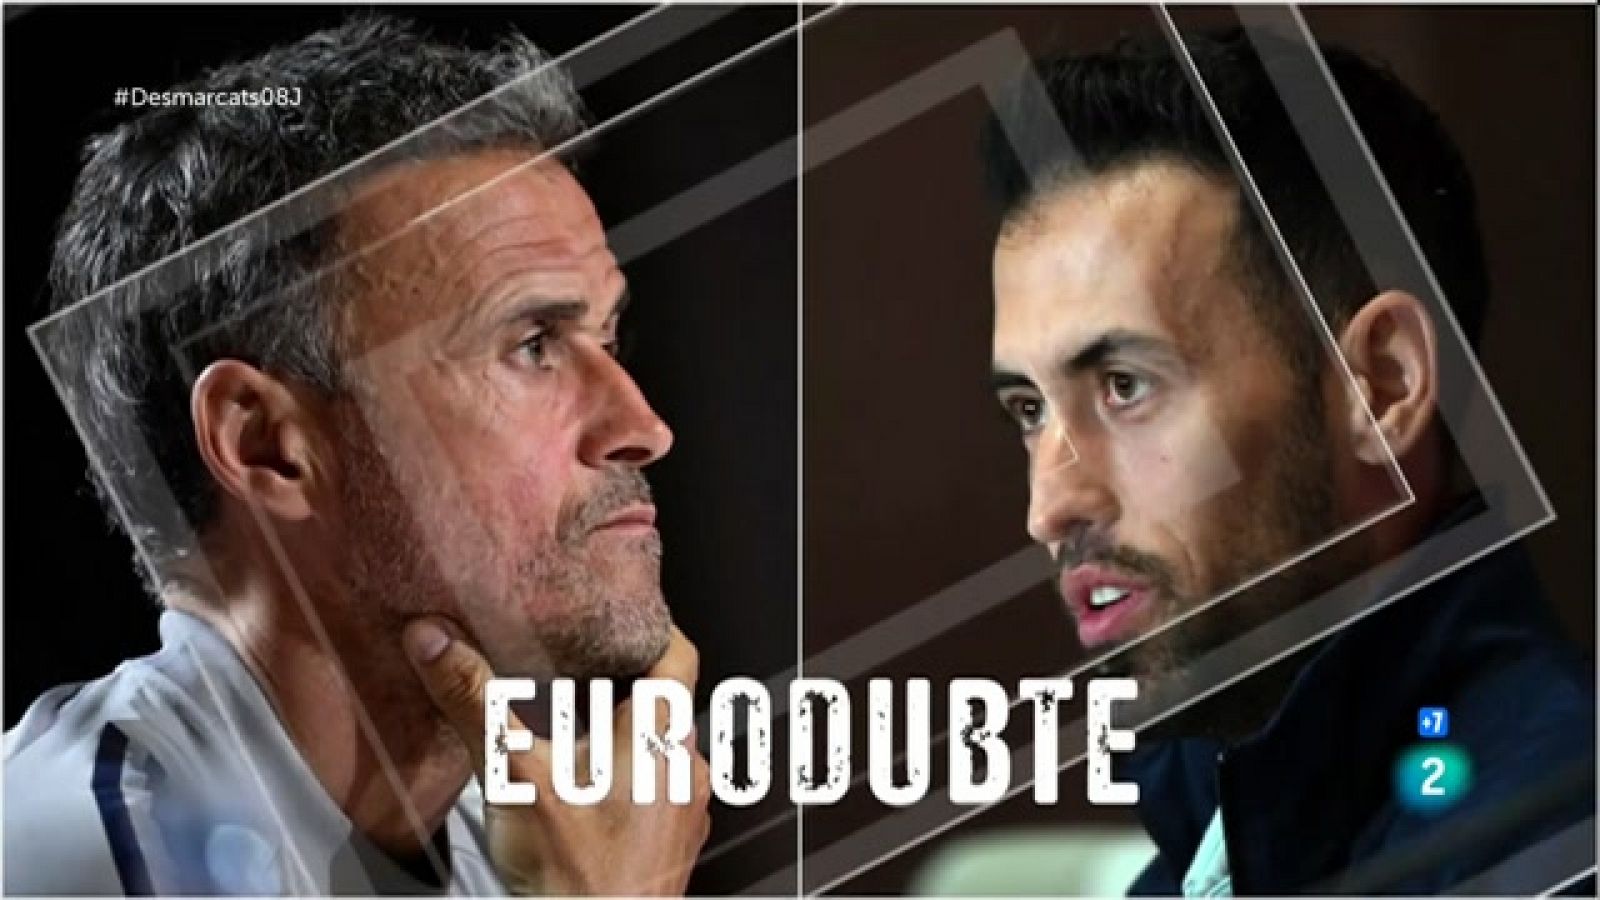 Desmarcats | Tertúlia: 'Euro dubte' amb Busquets